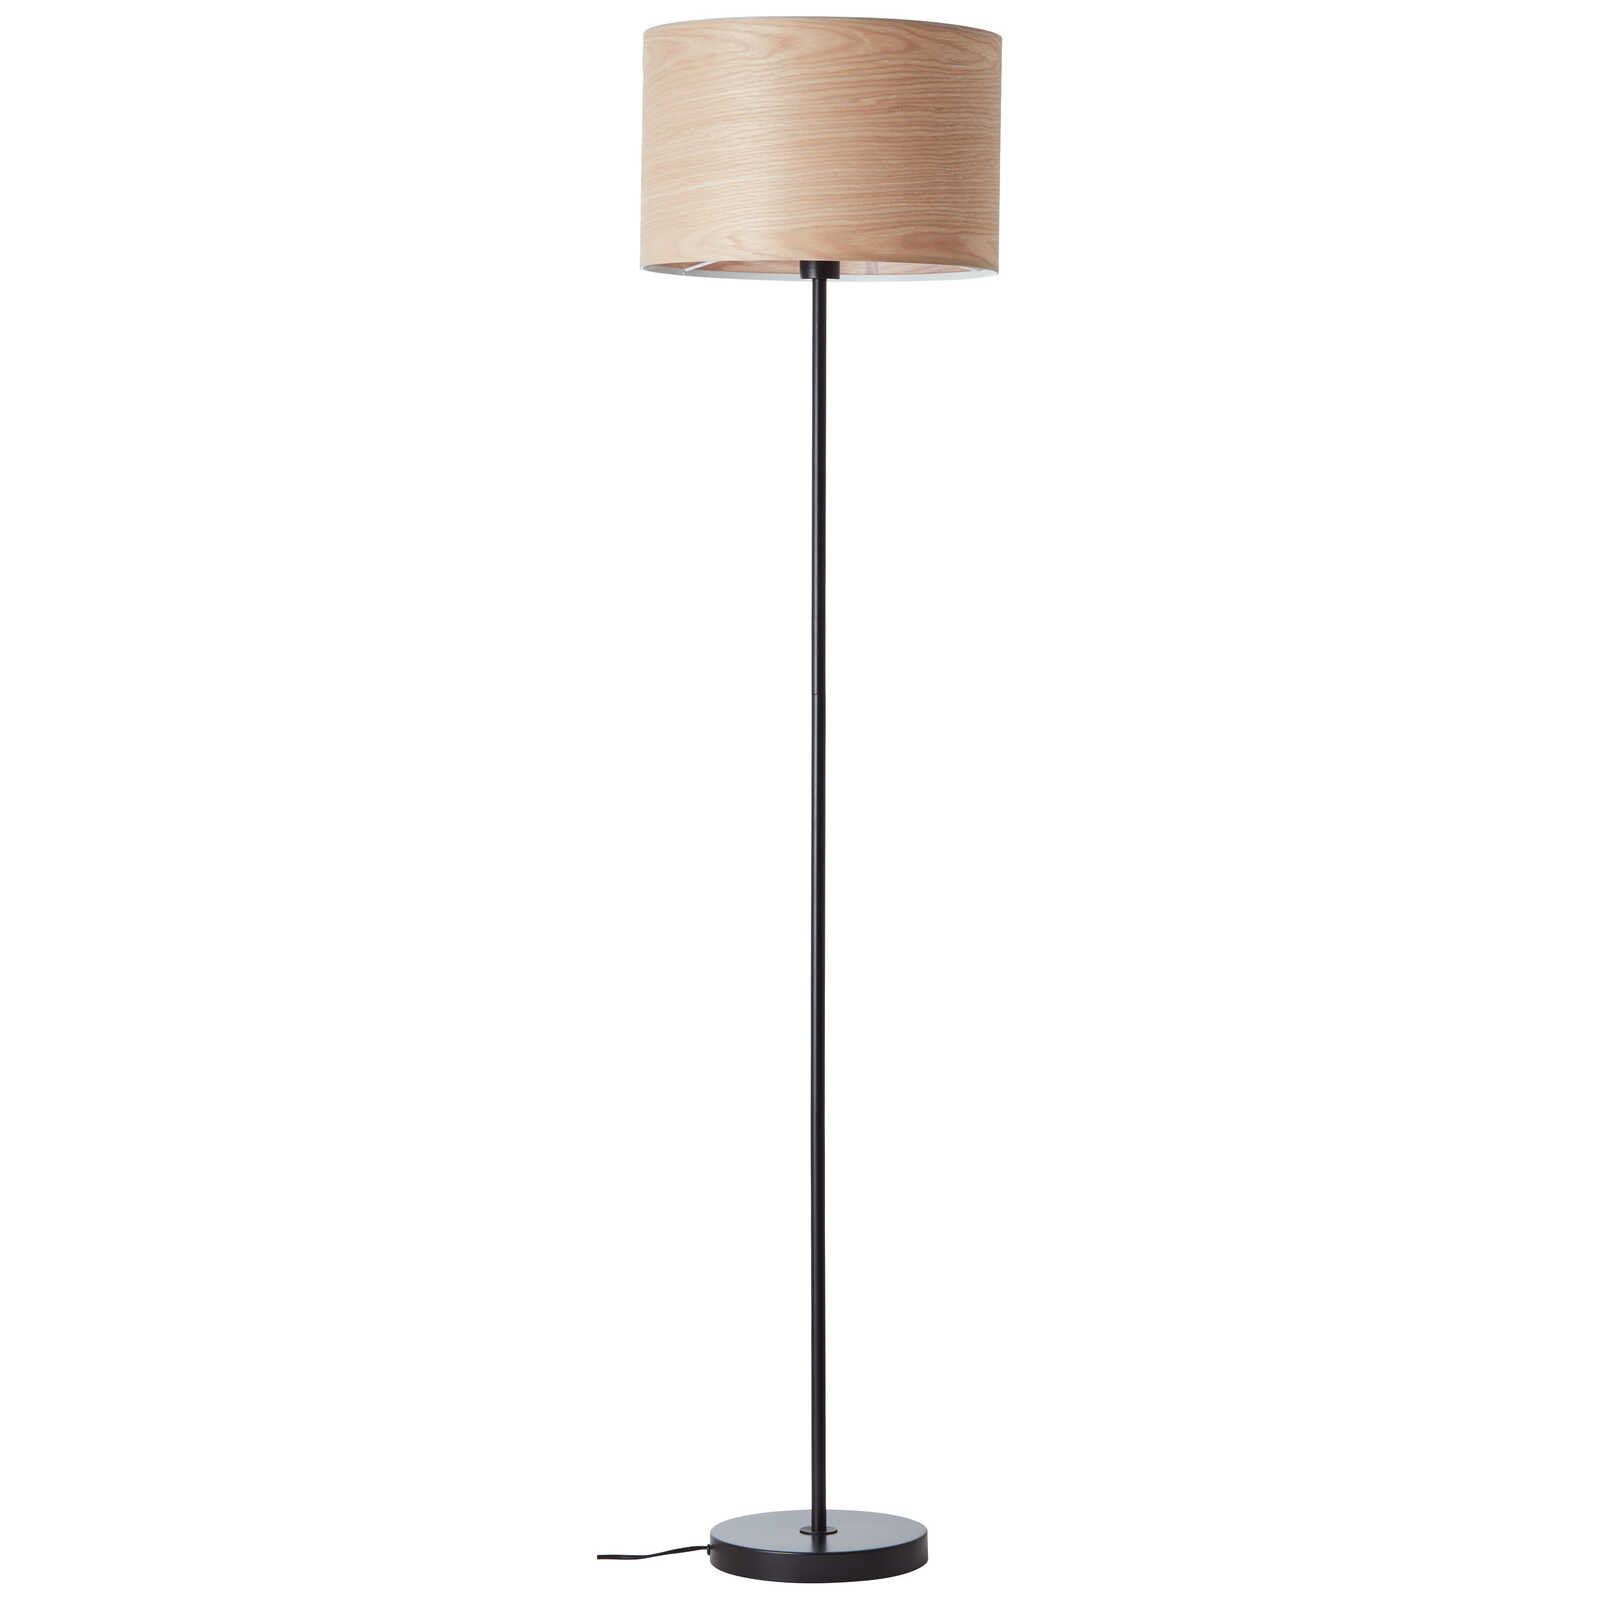             Wooden floor lamp - Michael 4 - Beige
        